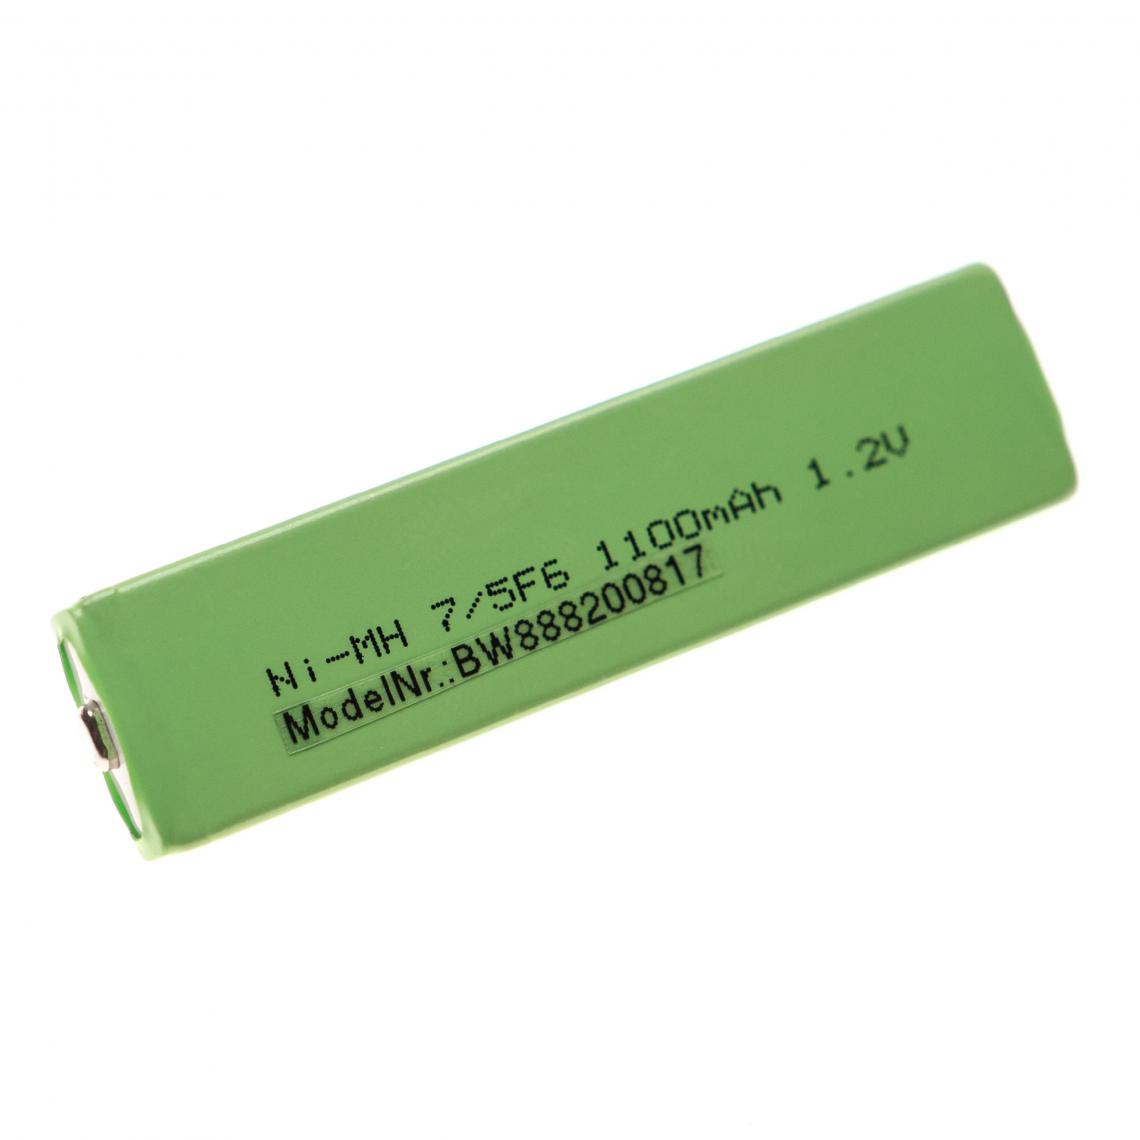 Vhbw - vhbw Cellules de batterie remplacement pour Sony NH-9WM, NH-9WM(N) pour baladeur, Minidisc (1100mAh, 1,2V, NiMH), bouton Top, 7/5F6 - Batteries électroniques